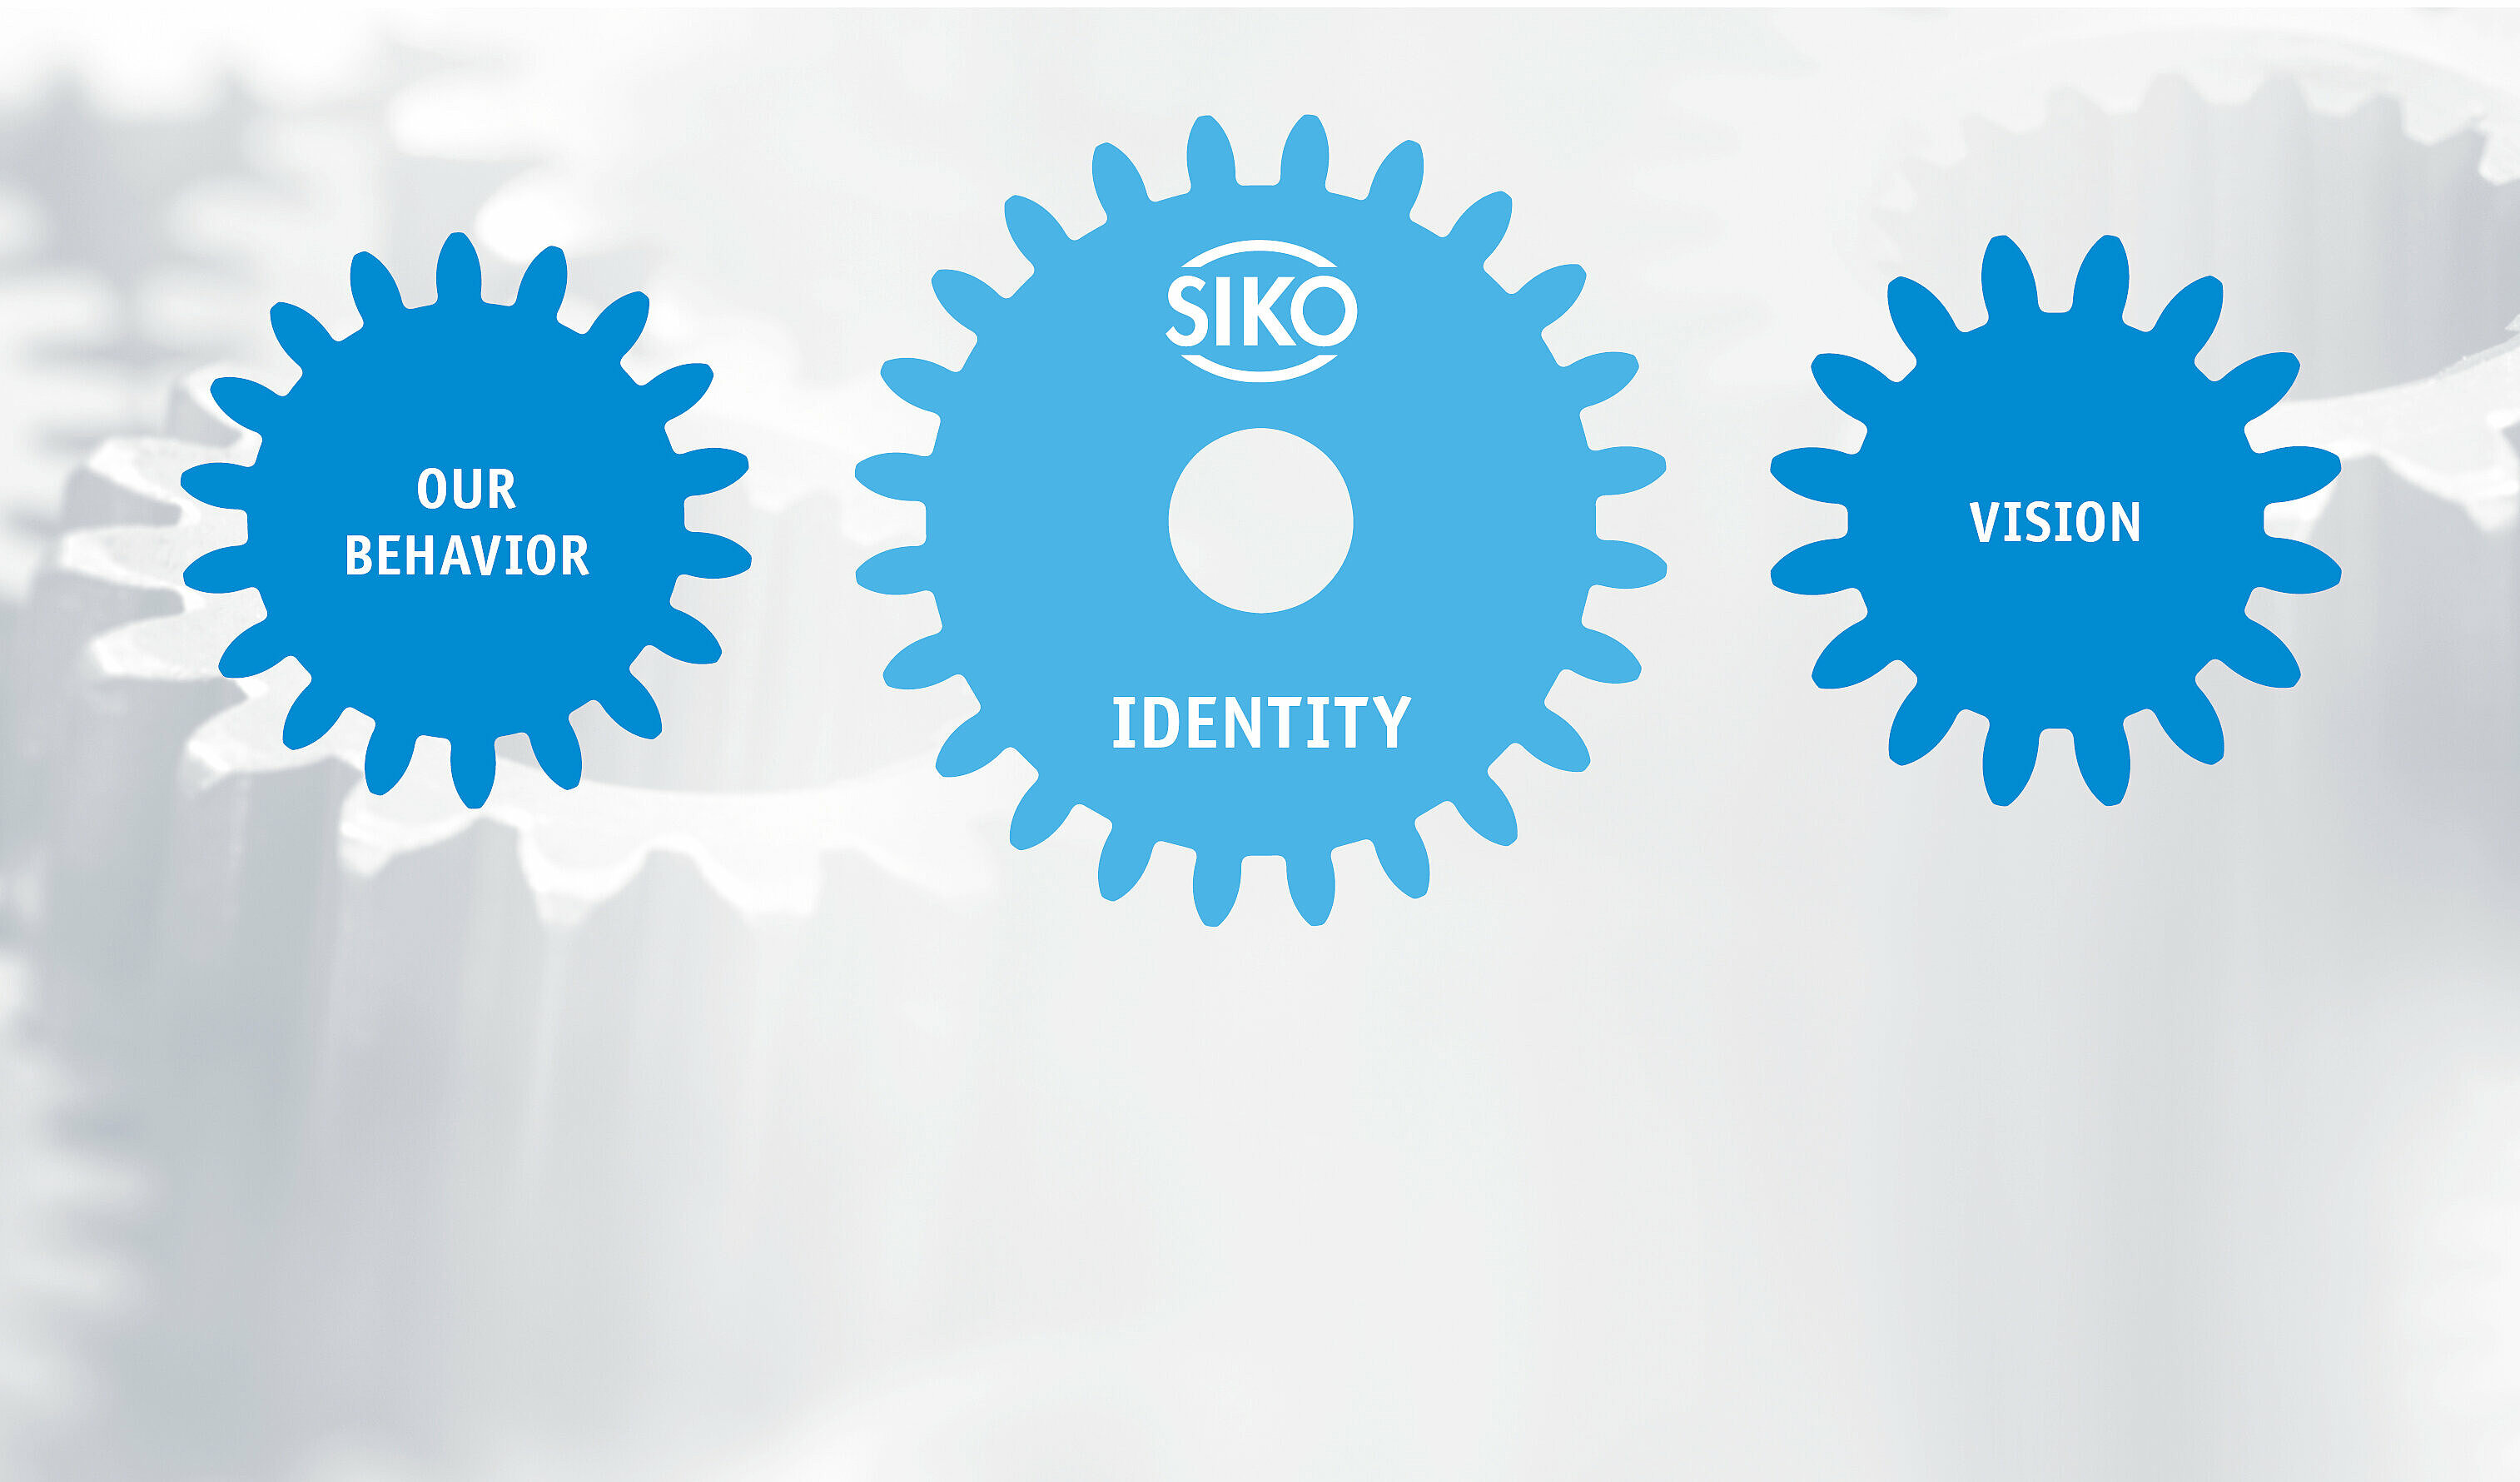 SIKO 公司使命的关键点用蓝色齿轮表示